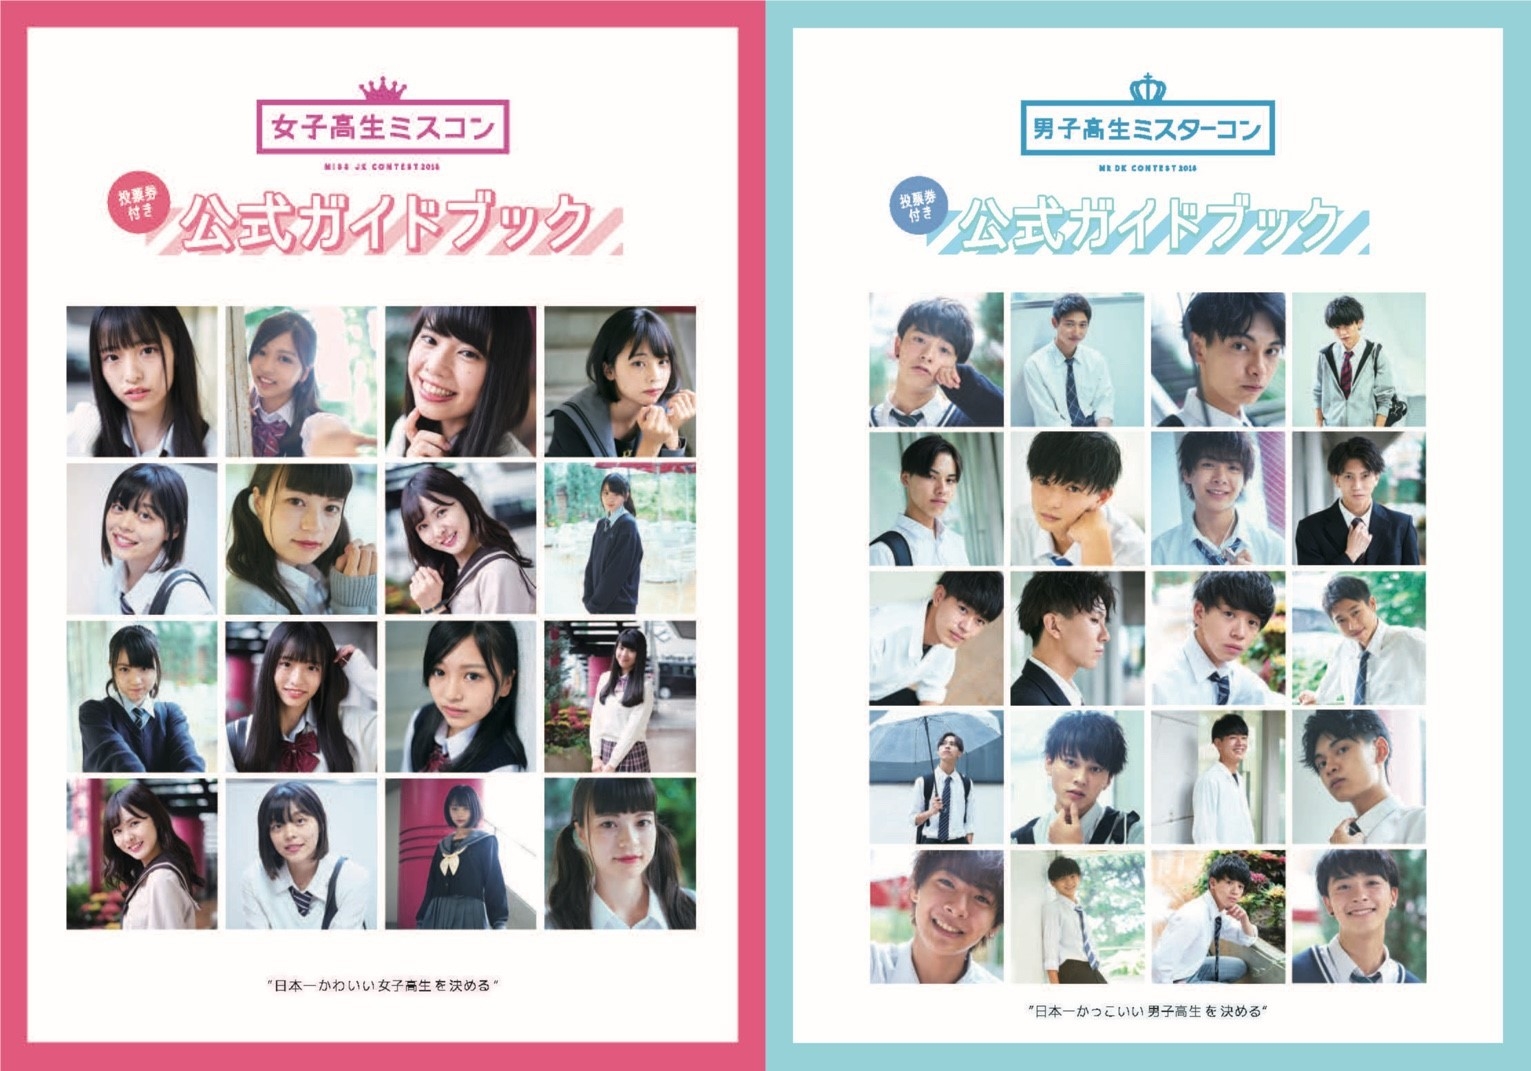 女子高生ミスコン 男子高生ミスターコン2018の公式ガイドブックが発売 株式会社エイチジェイ